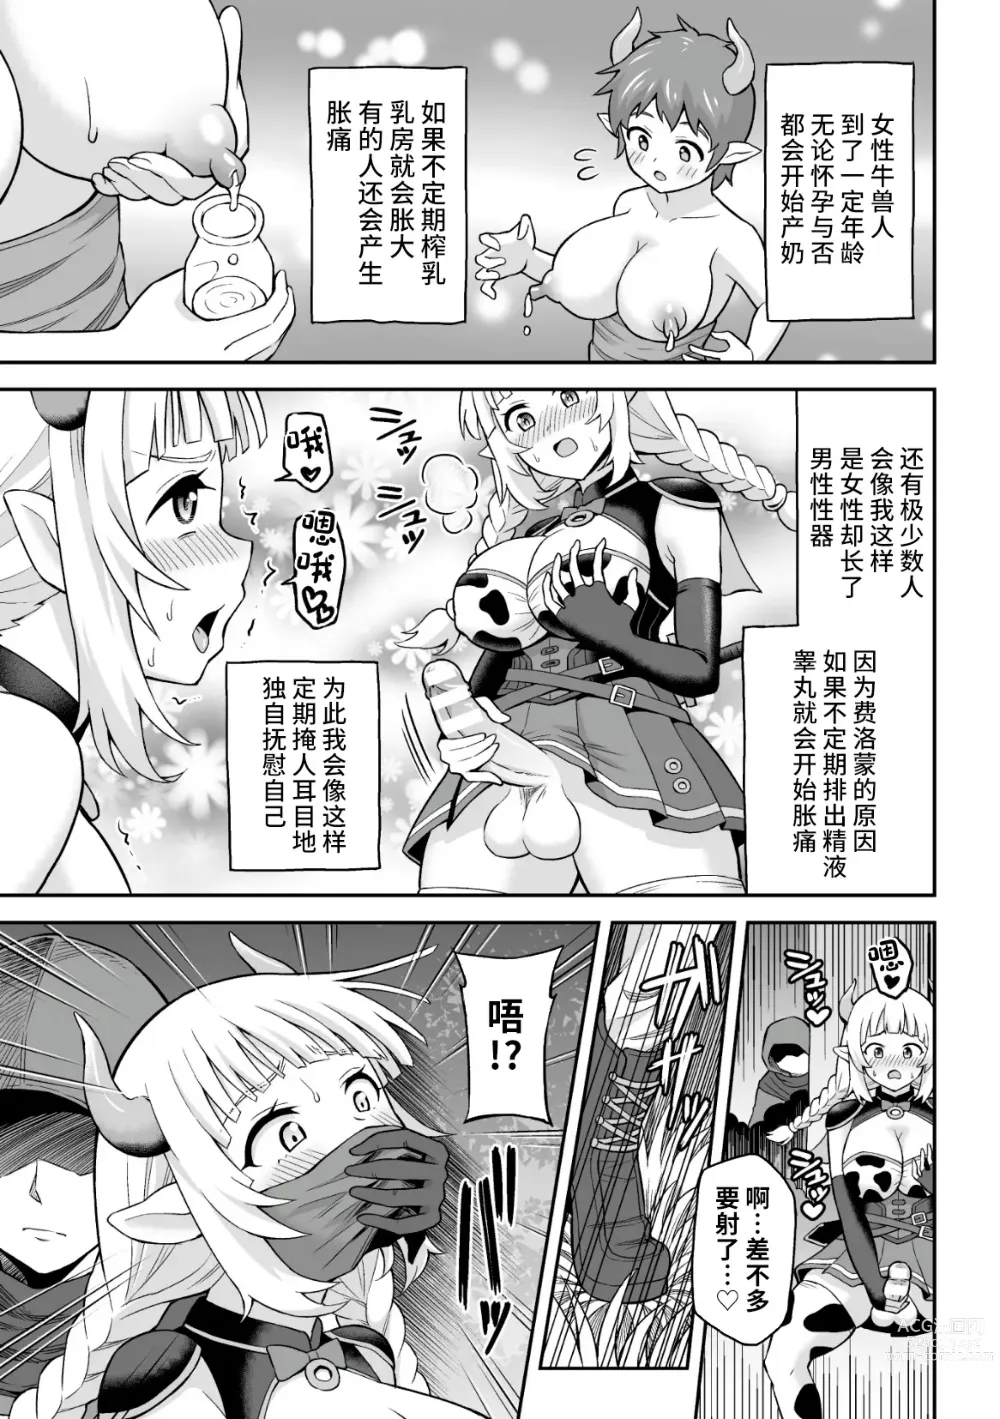 Page 3 of manga Ushi Musume no Kyousei Oschinpo Milk